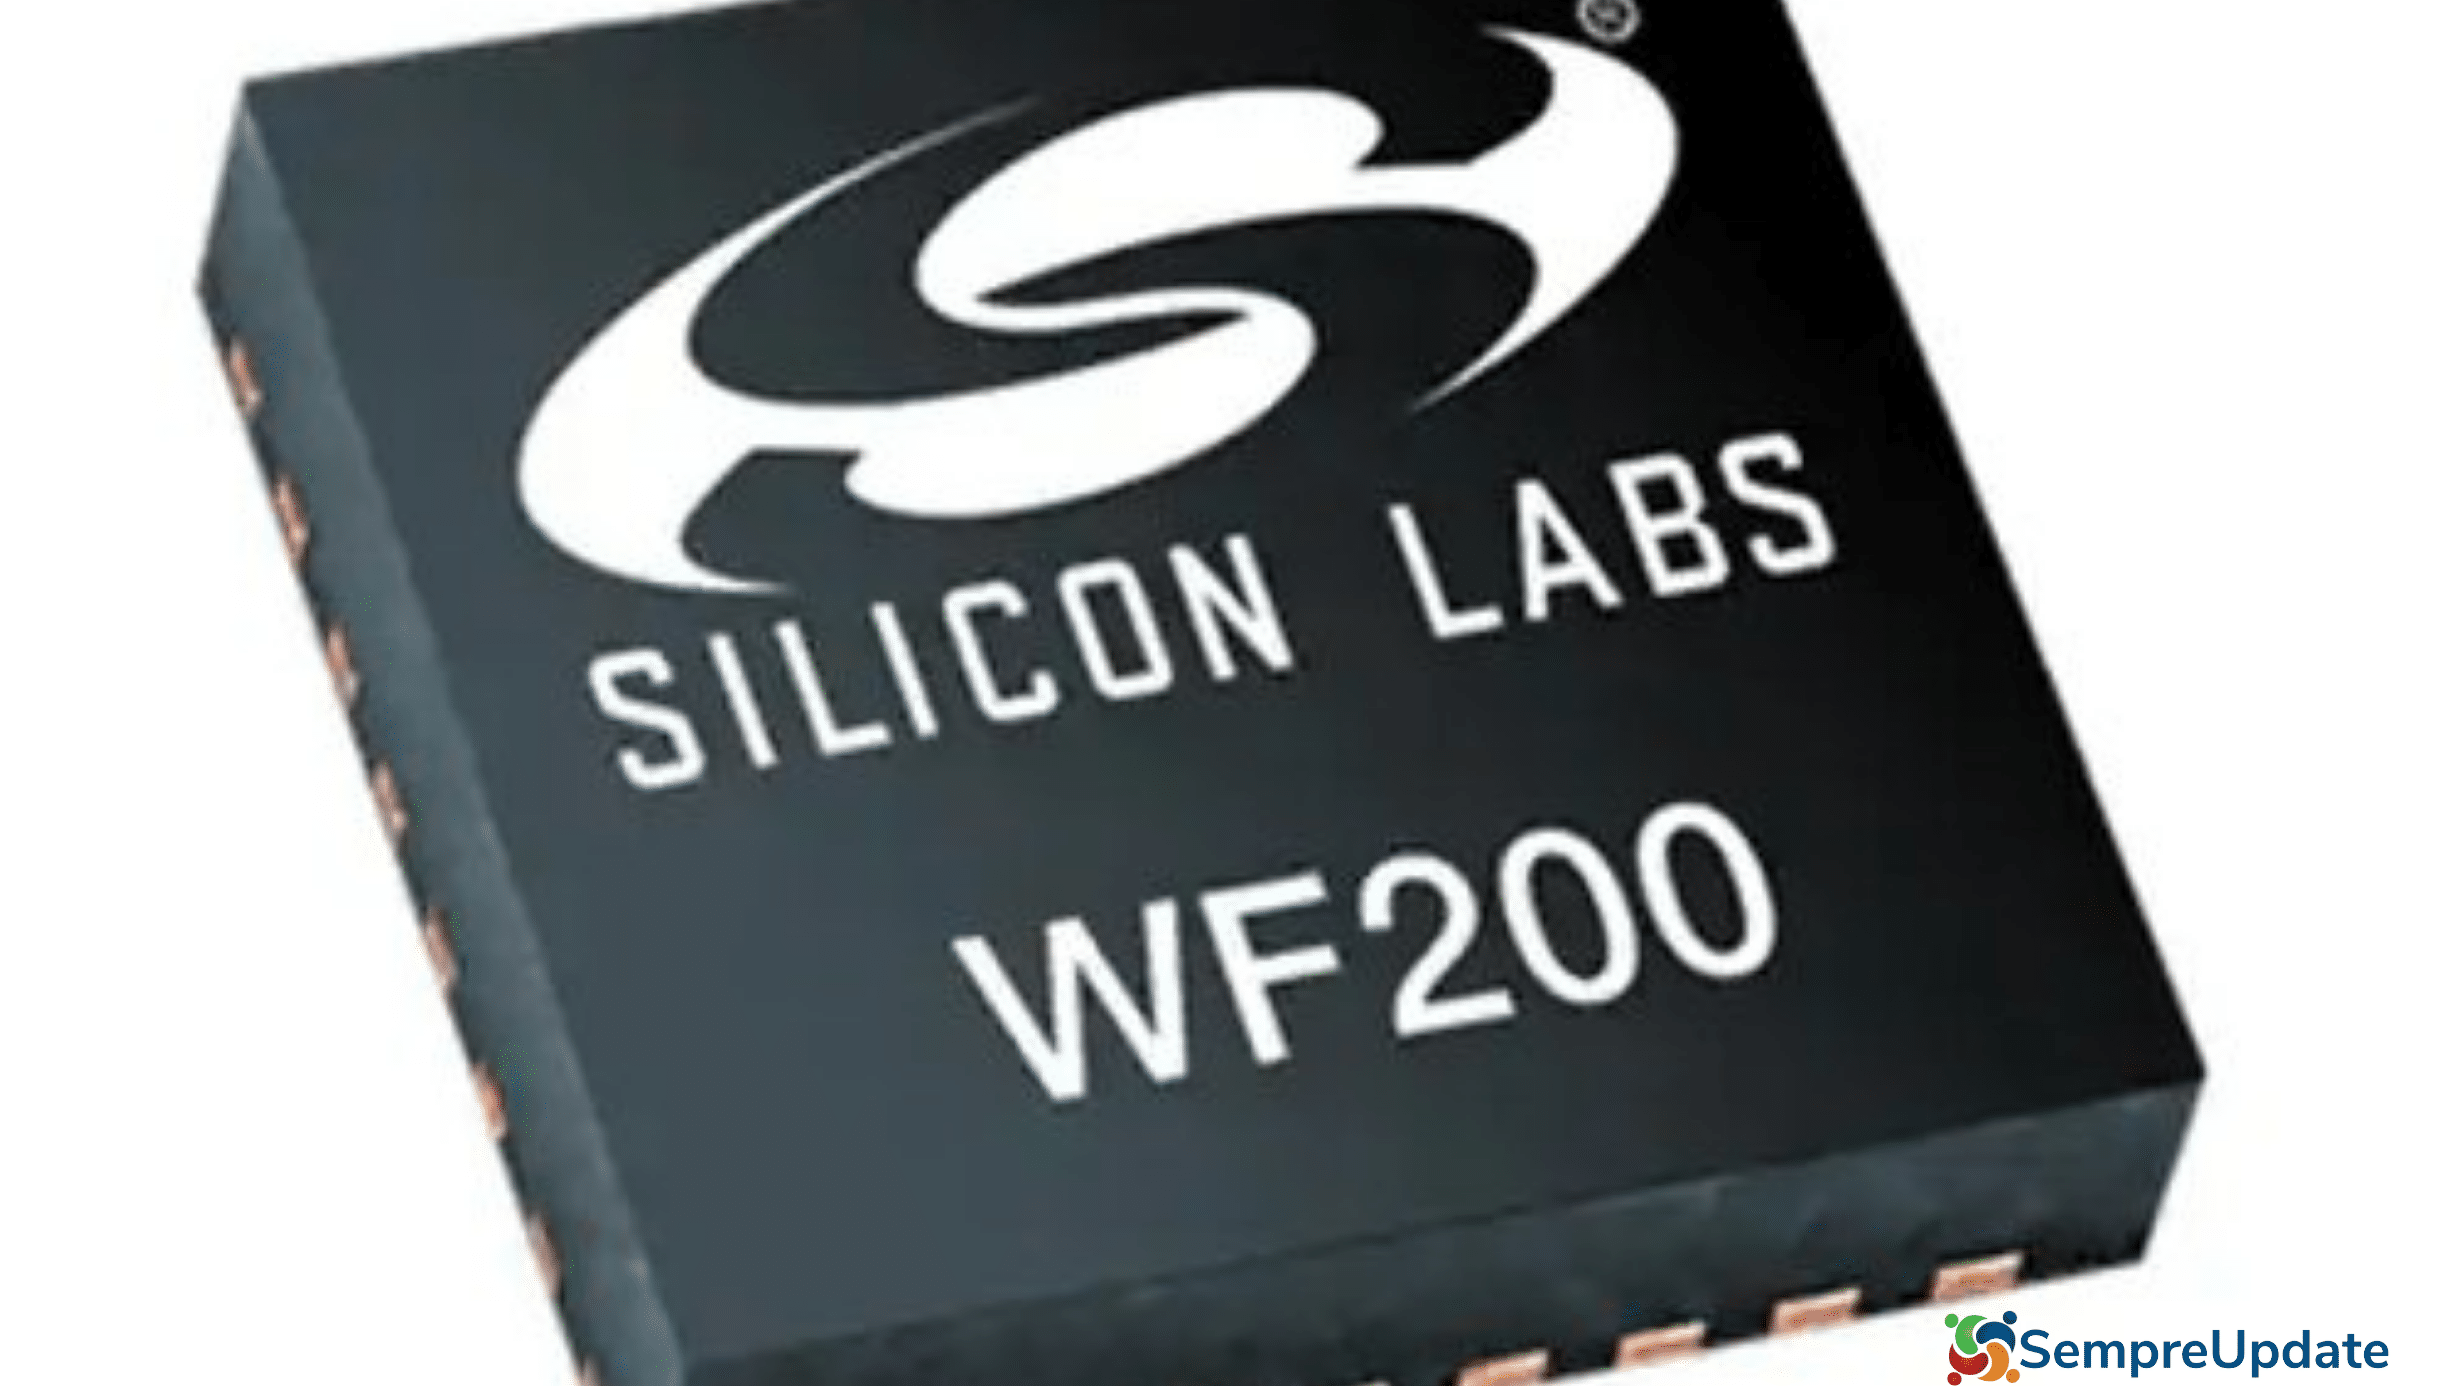 Driver para Linux WiFi da Silicon Labs sai da fase de teste